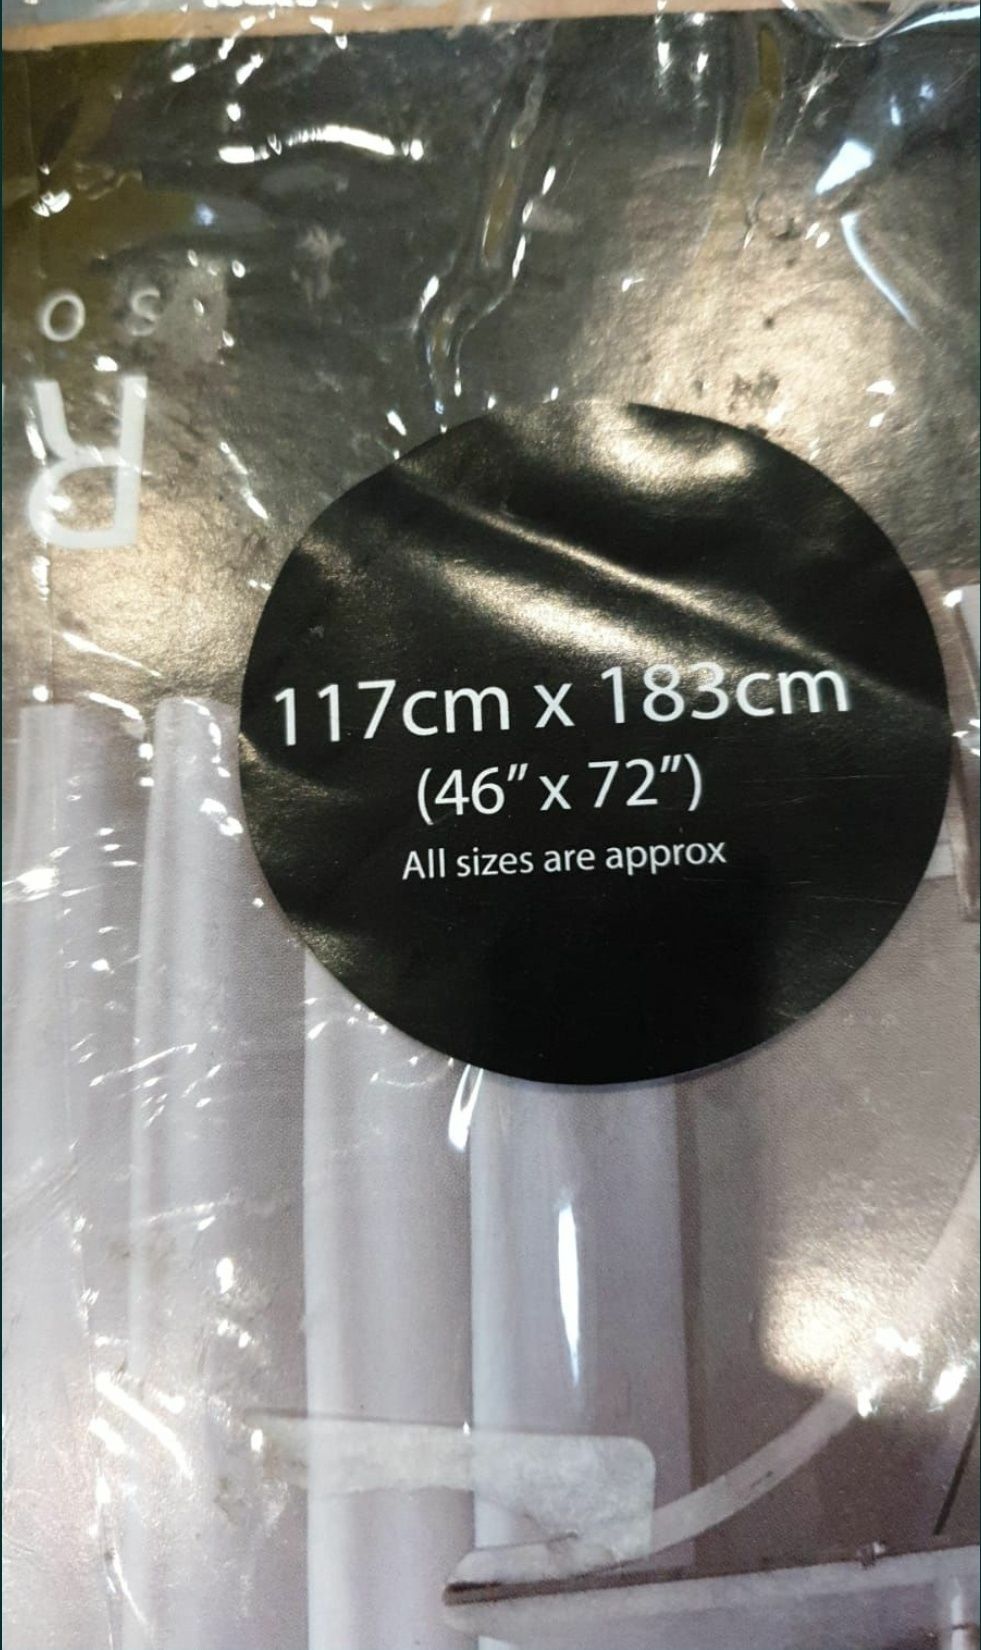 Draperii albe căptusite 117/183cm,set de 2 bc